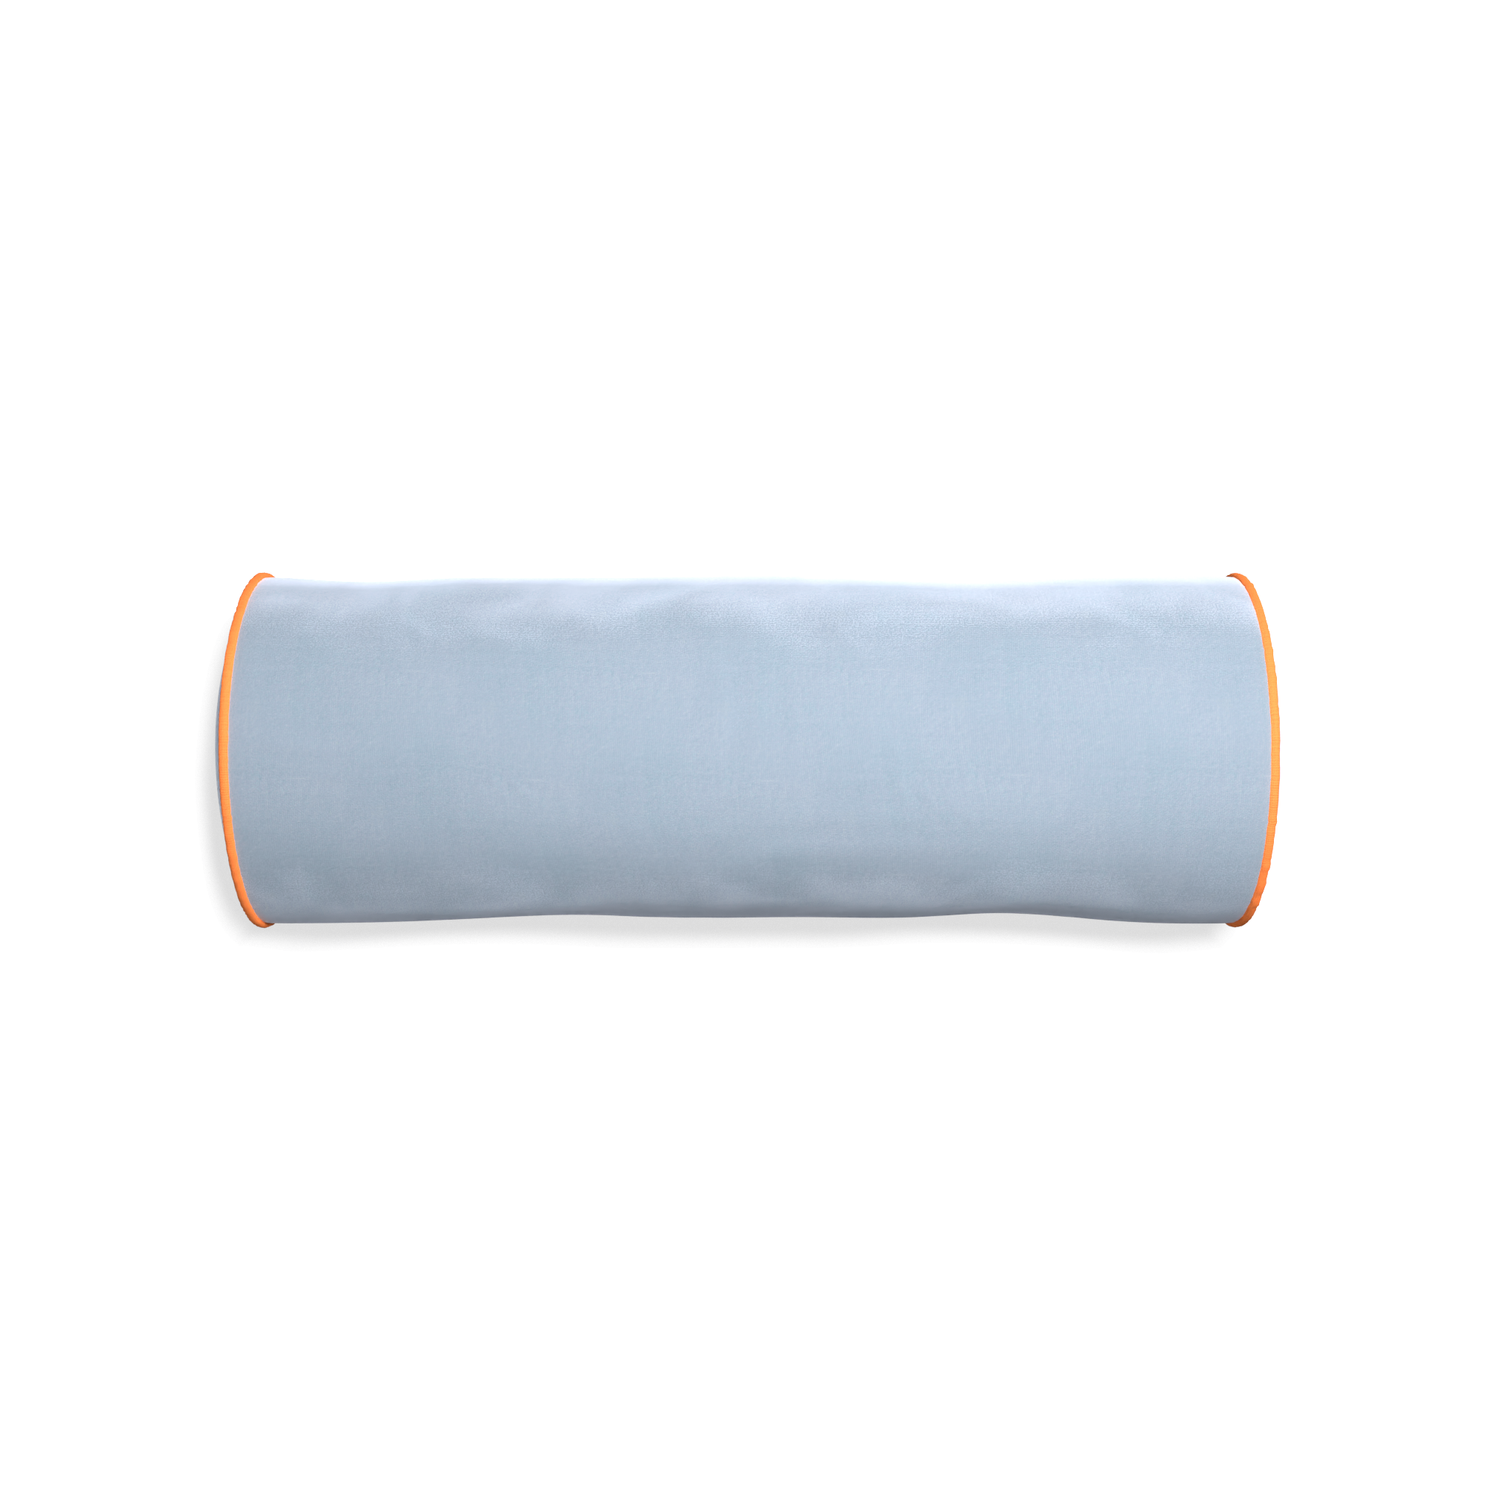 bolster sky blue velvet pillow with orange piping 